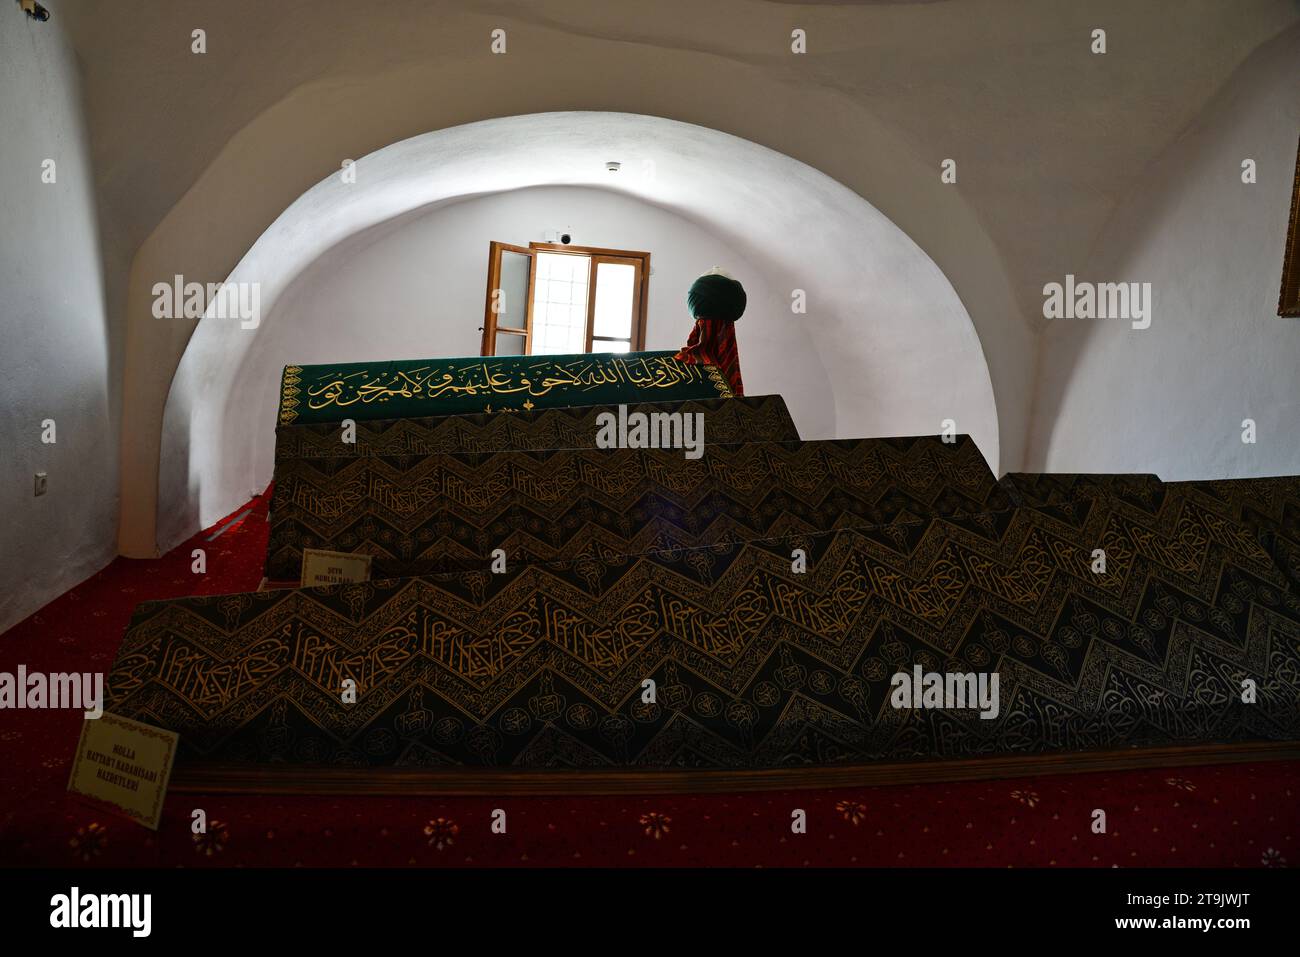 Edebali, der spirituelle Gründer des Osmanischen Reiches, ist im Seyh Edebali-Grab in Bilecik, Türkei, begraben. Stockfoto